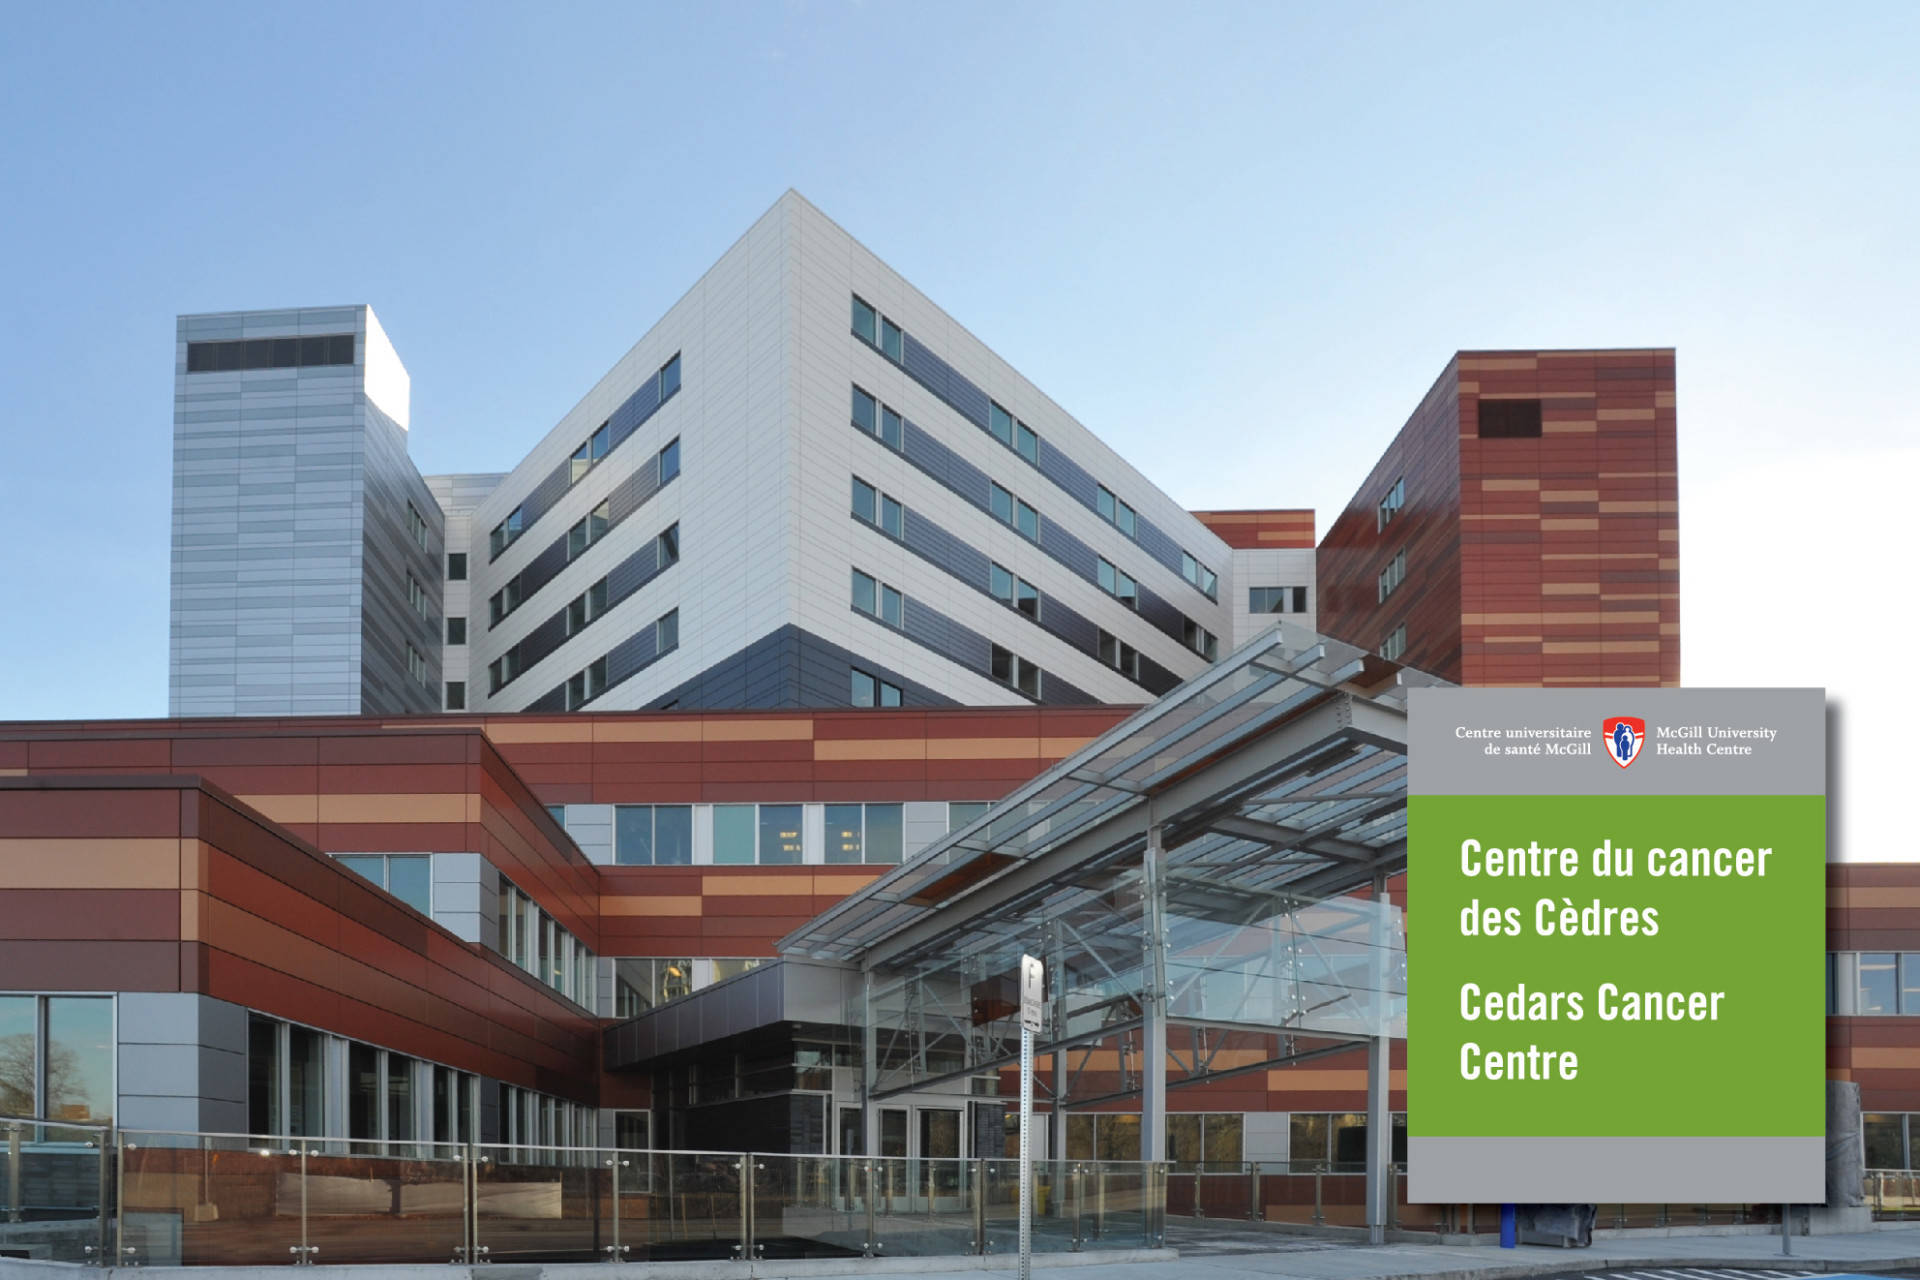 Cedars Cancer Centre